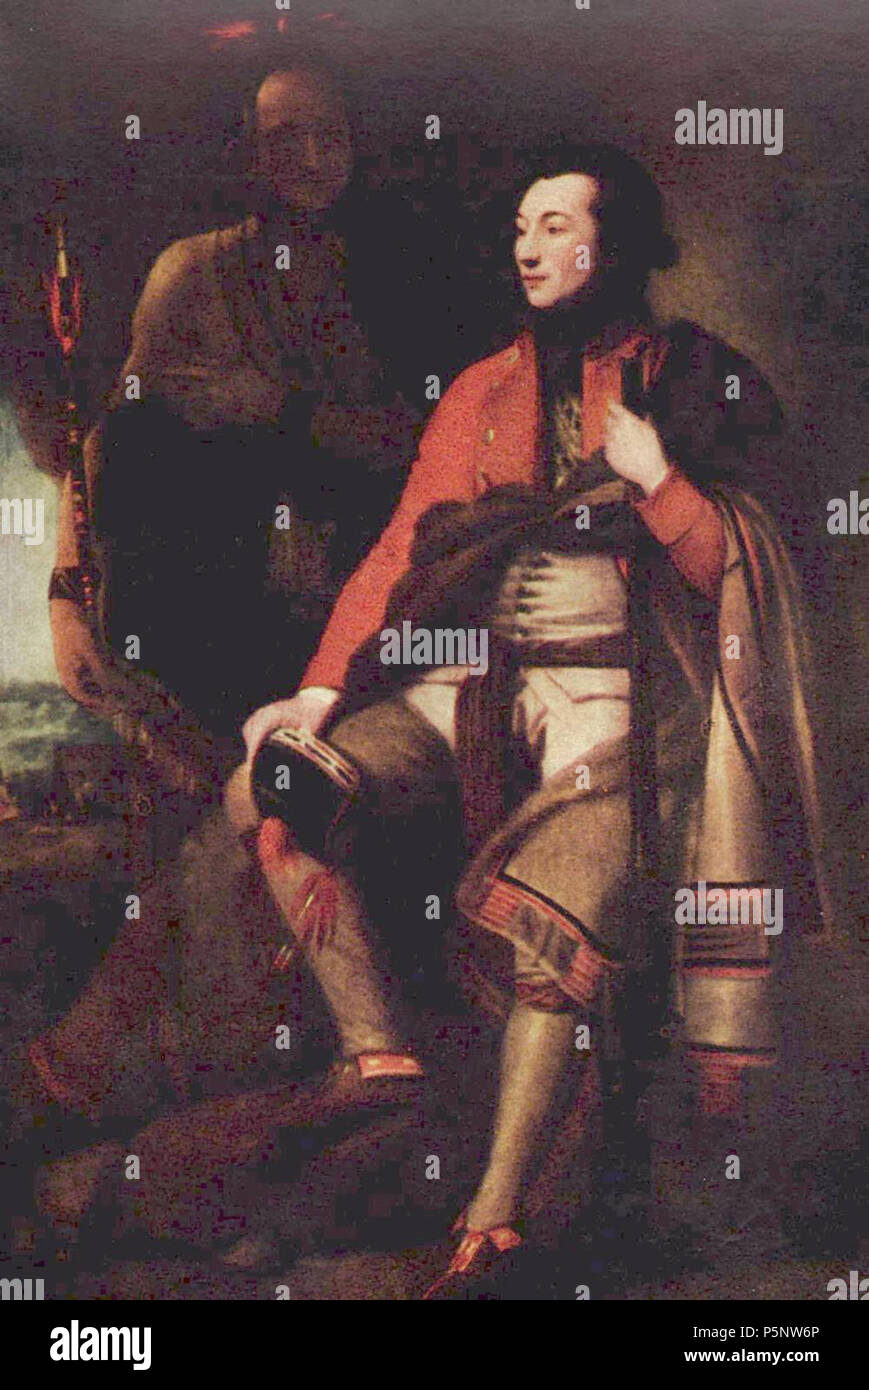 Deutsch: Porträt des il colonnello Guy Johnson inglese: ritratto del colonnello Guy Johnson o eventualmente di Sir William Johnson tra 1775 e 1776. N/A 187 Benjamin West 004 Foto Stock